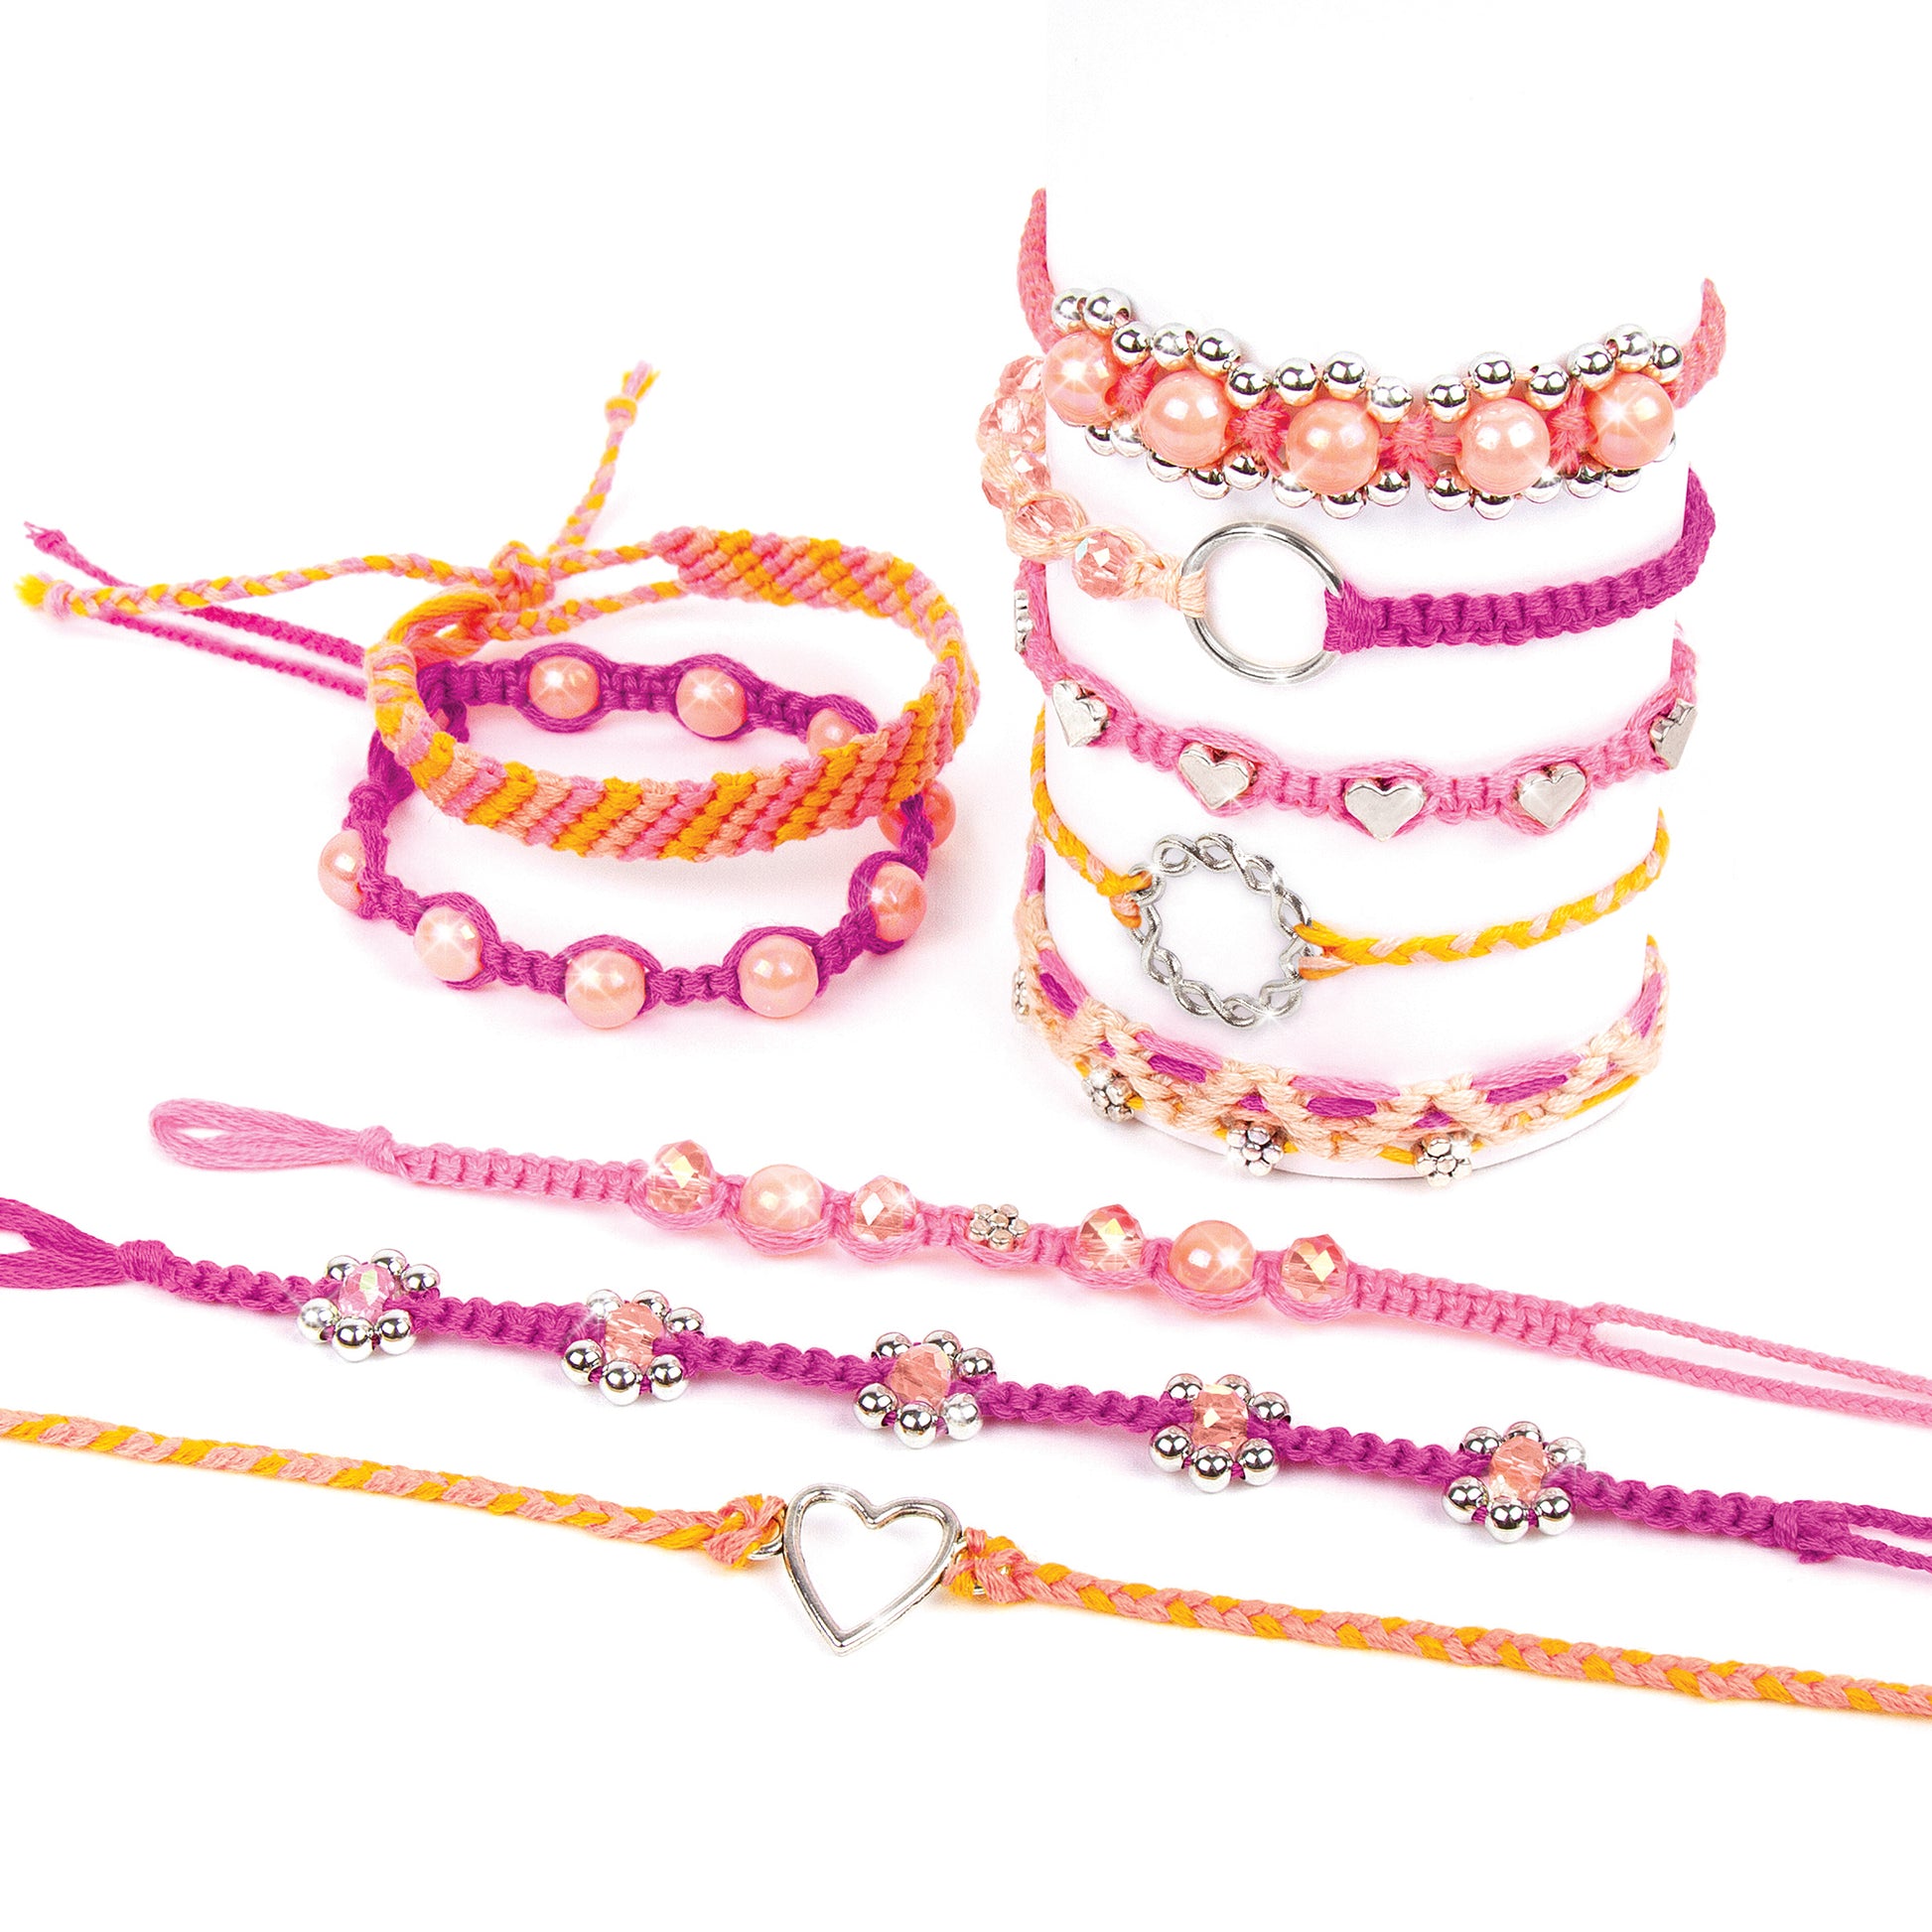 Make It Real Macrame Friendship Bracelets Do It Yourself Bracelet Kit